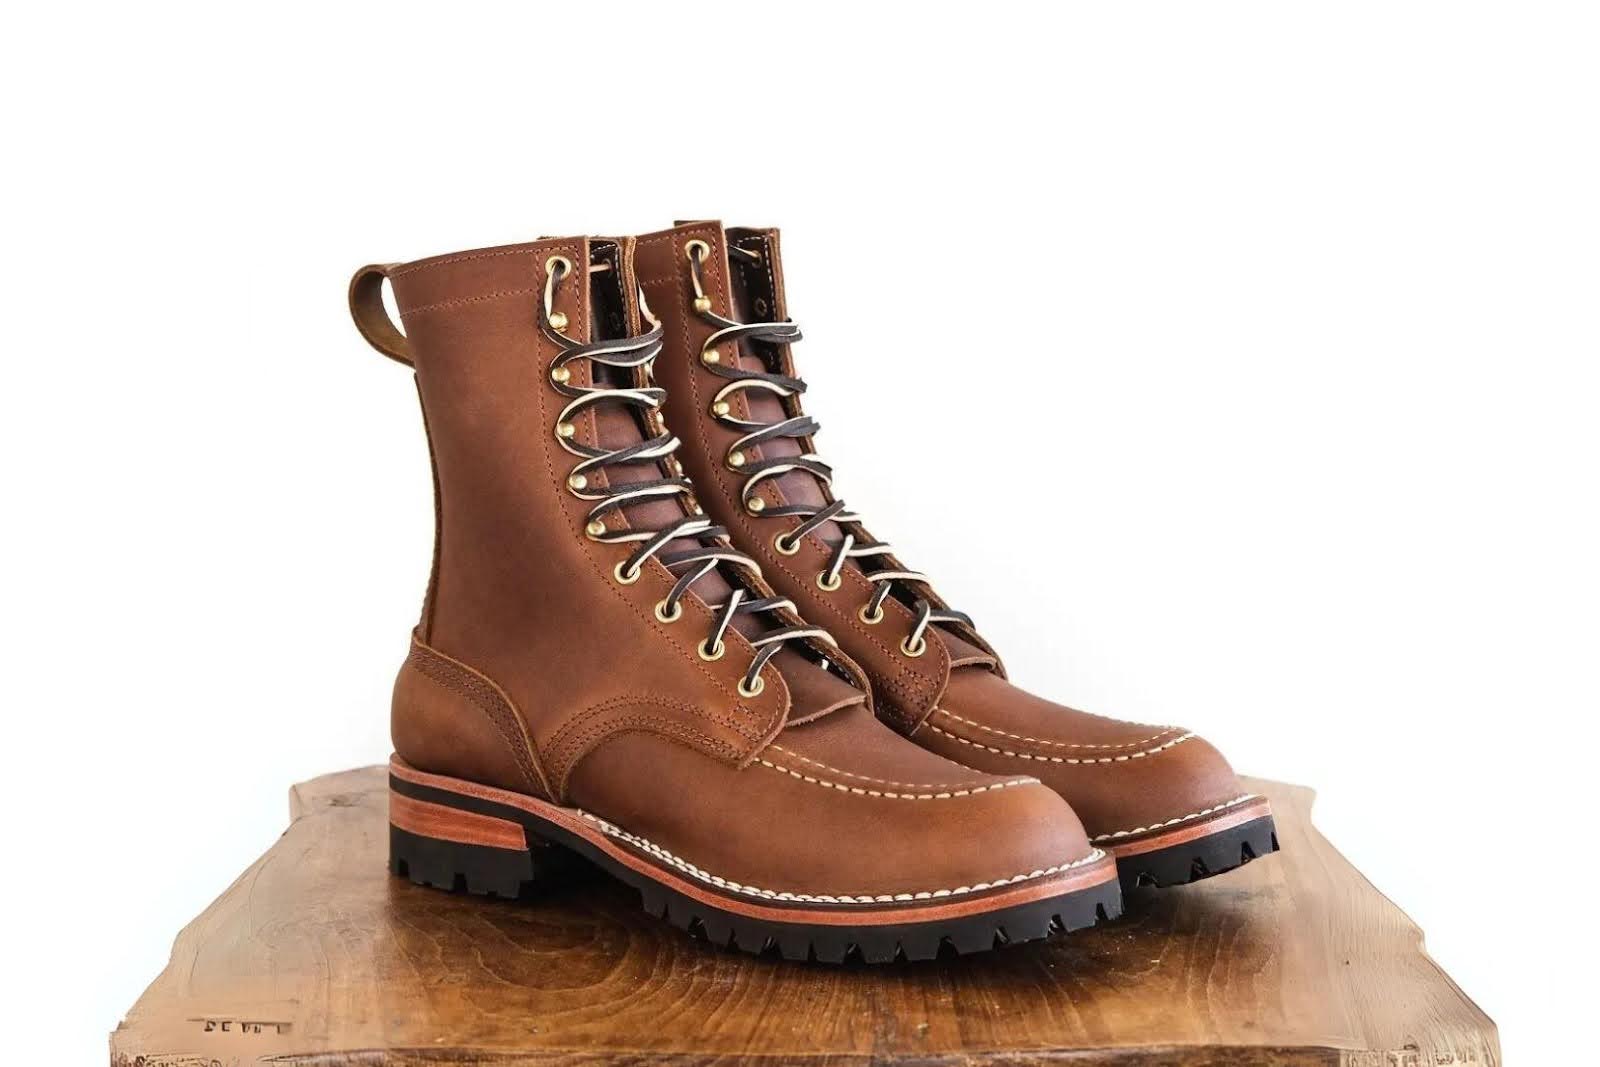 Design Features In Welding Boots